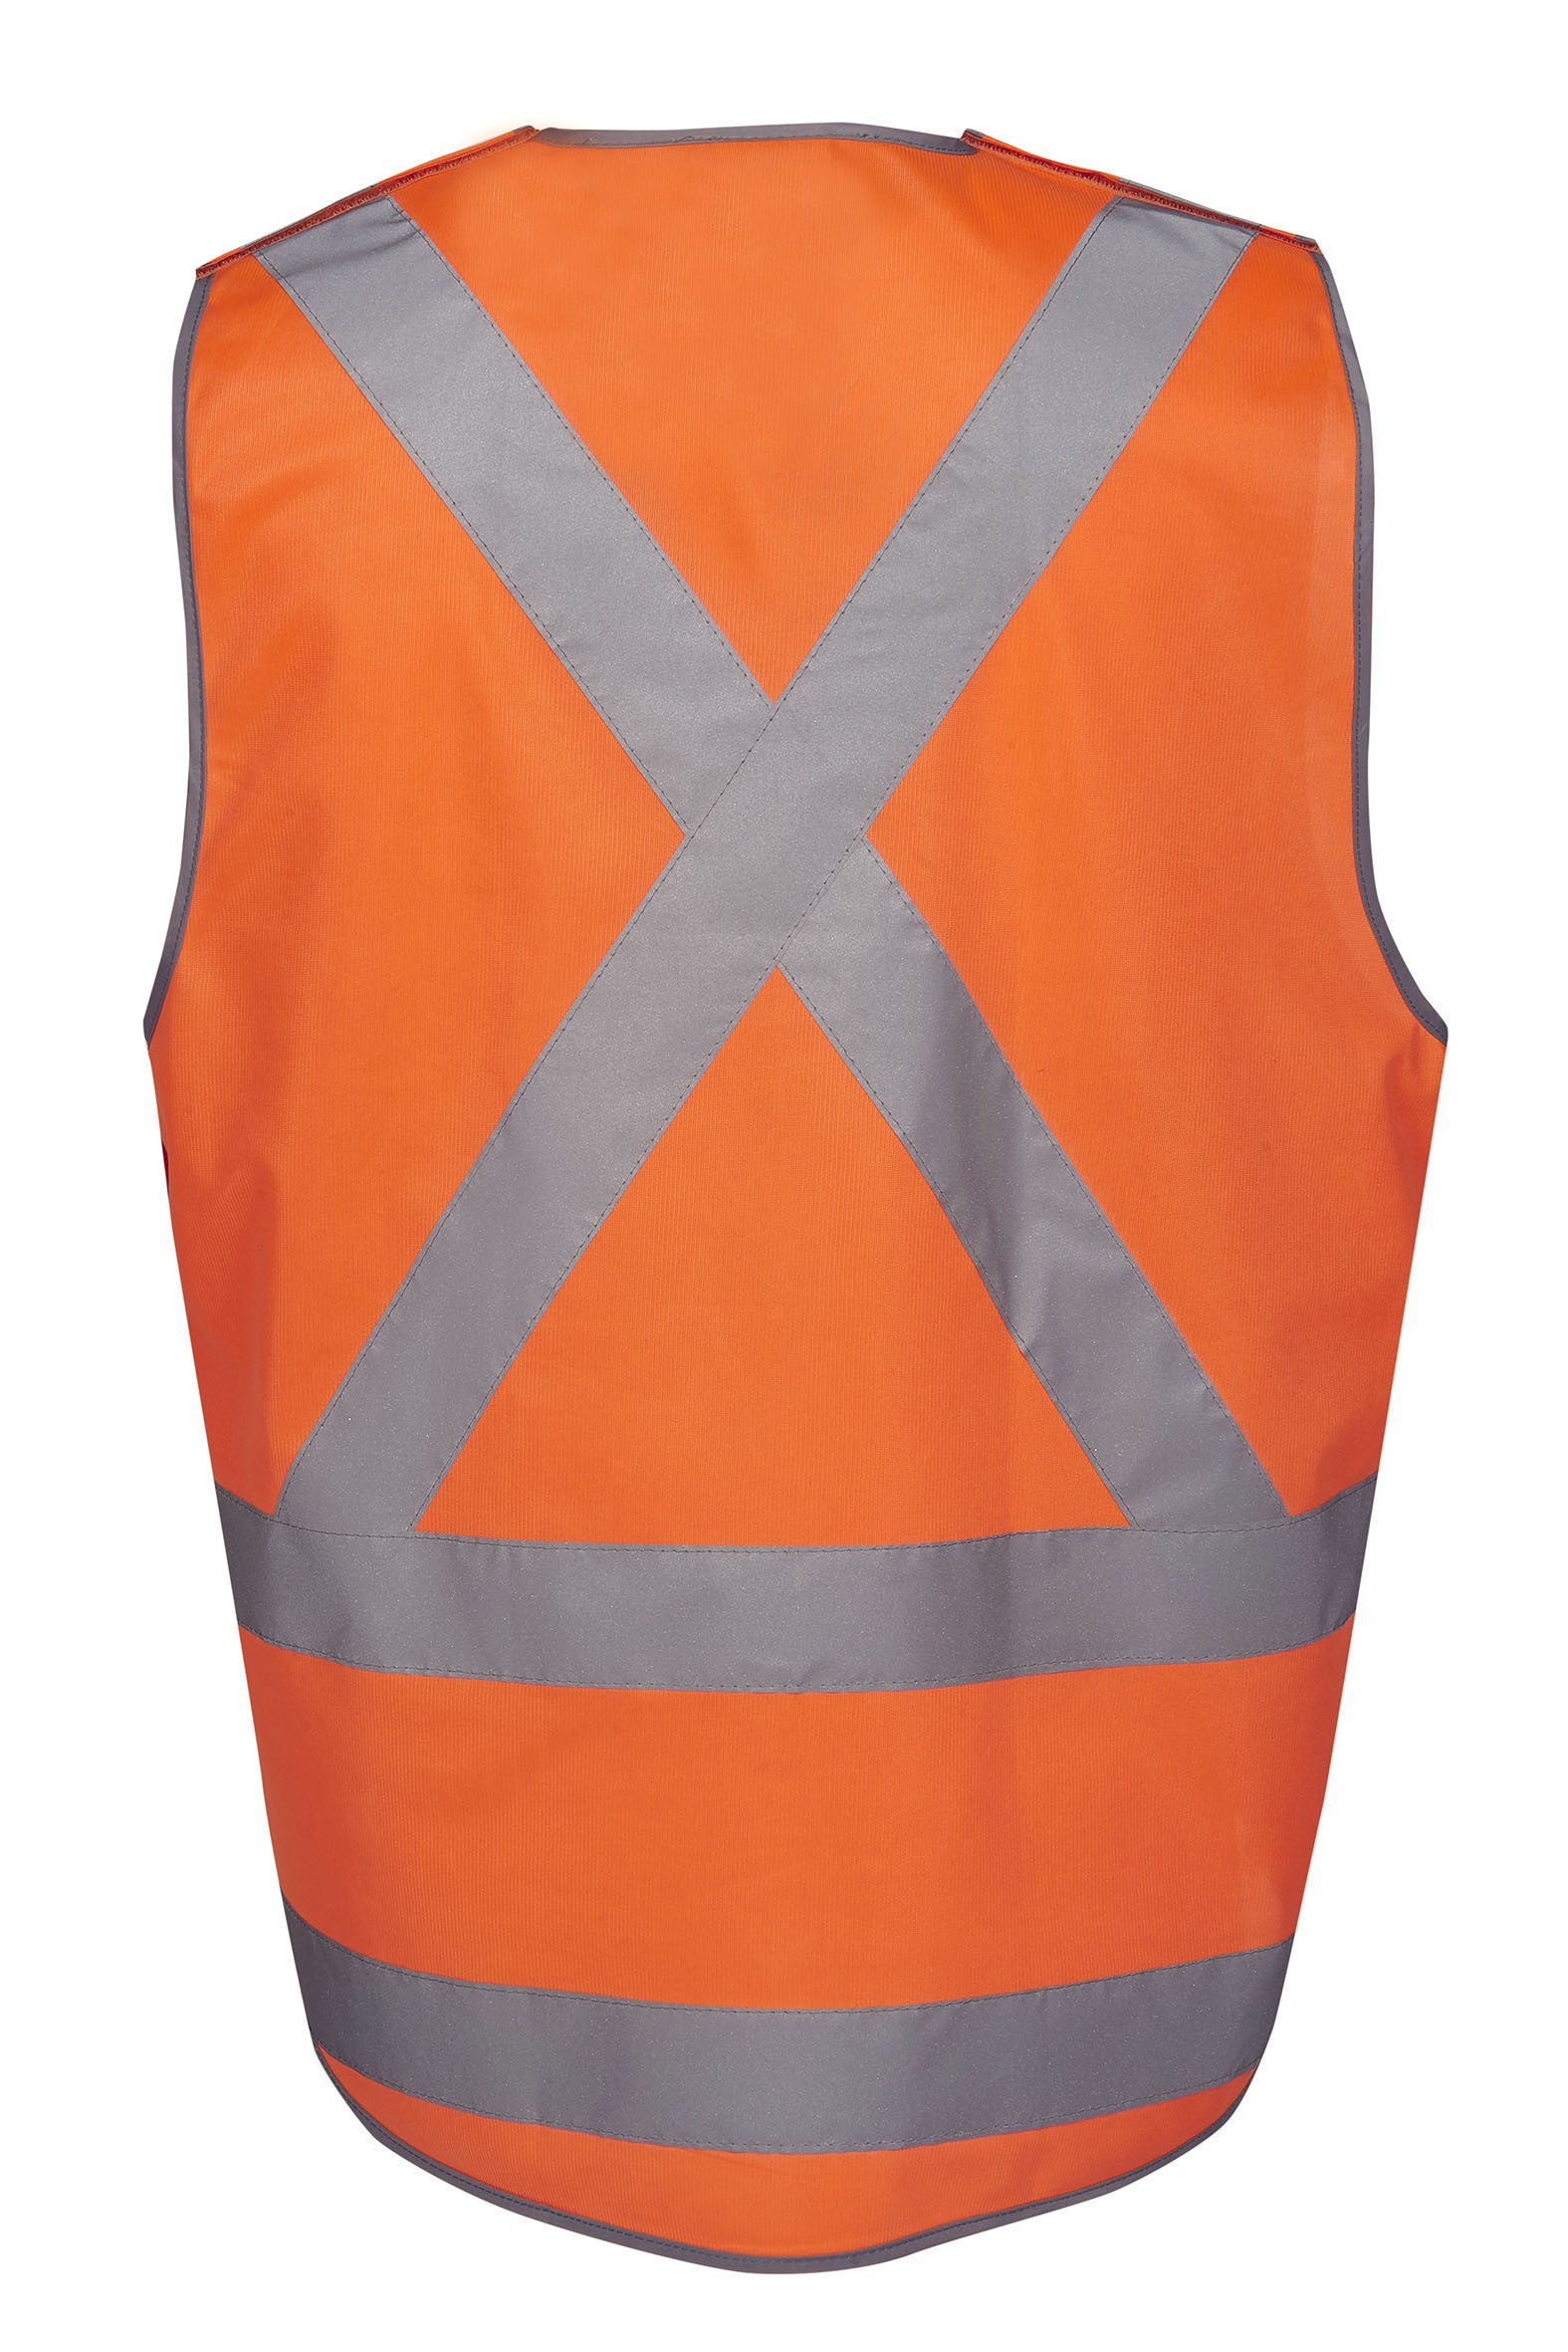 V87 Hi Vis D/N X Rail Pull Apart Vest - Safe-T-Rex Workwear Pty Ltd